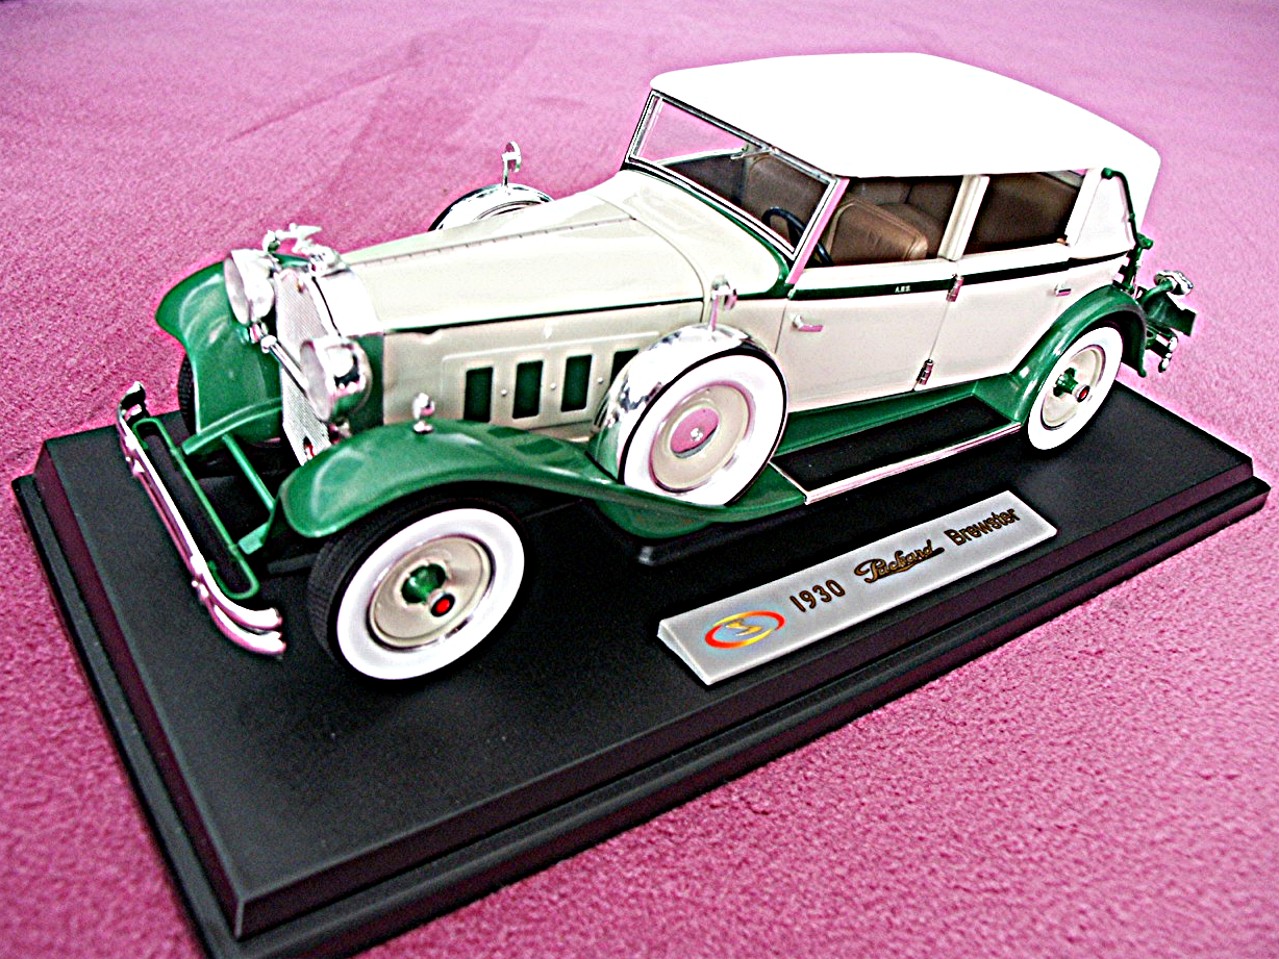 1:18 Packard Brewster gruen-weiss 1930